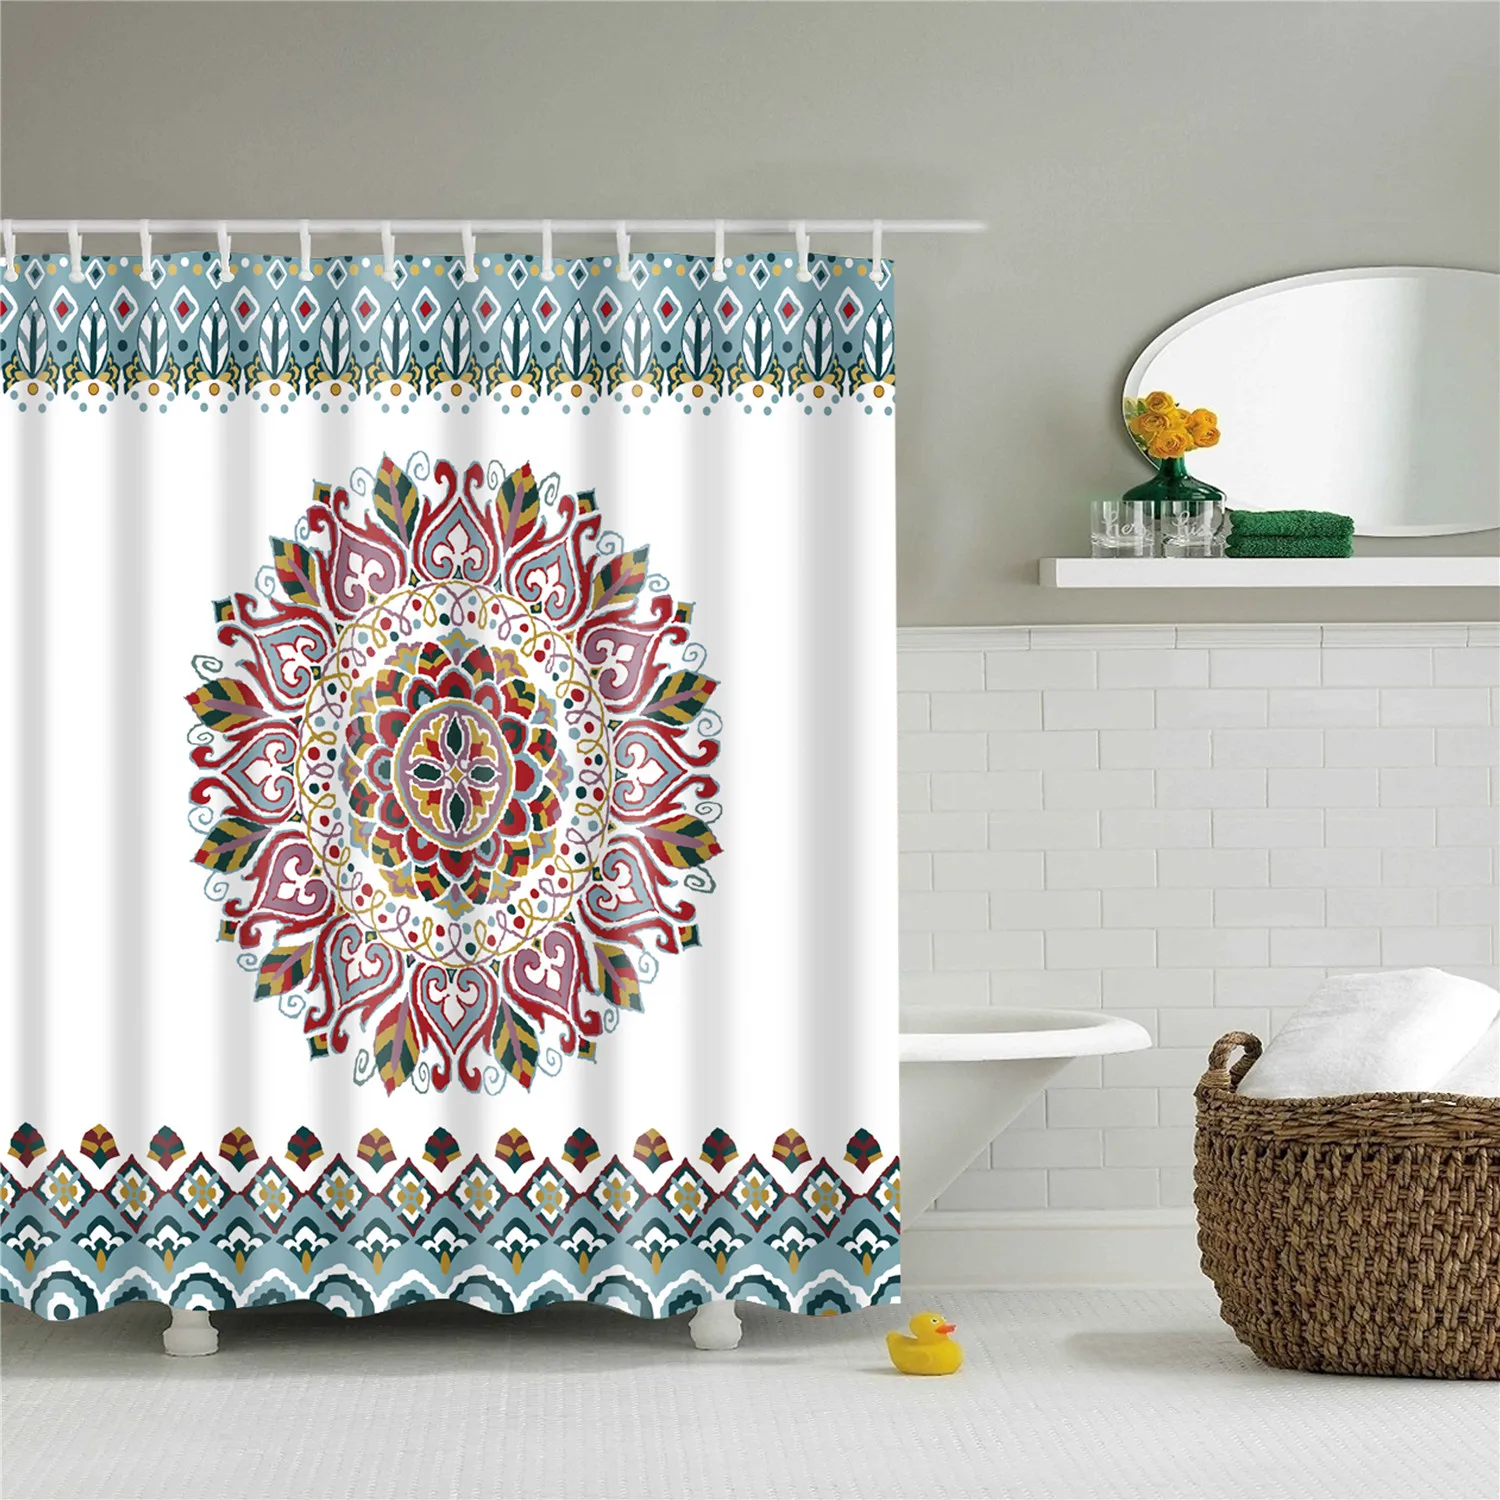 180x200 см индийский Bodhisattva 3D занавеска для ванной Водонепроницаемый полиэстер ткань затемненная Мандала занавеска для душа для ванной комнаты cortina - Цвет: TZ161217